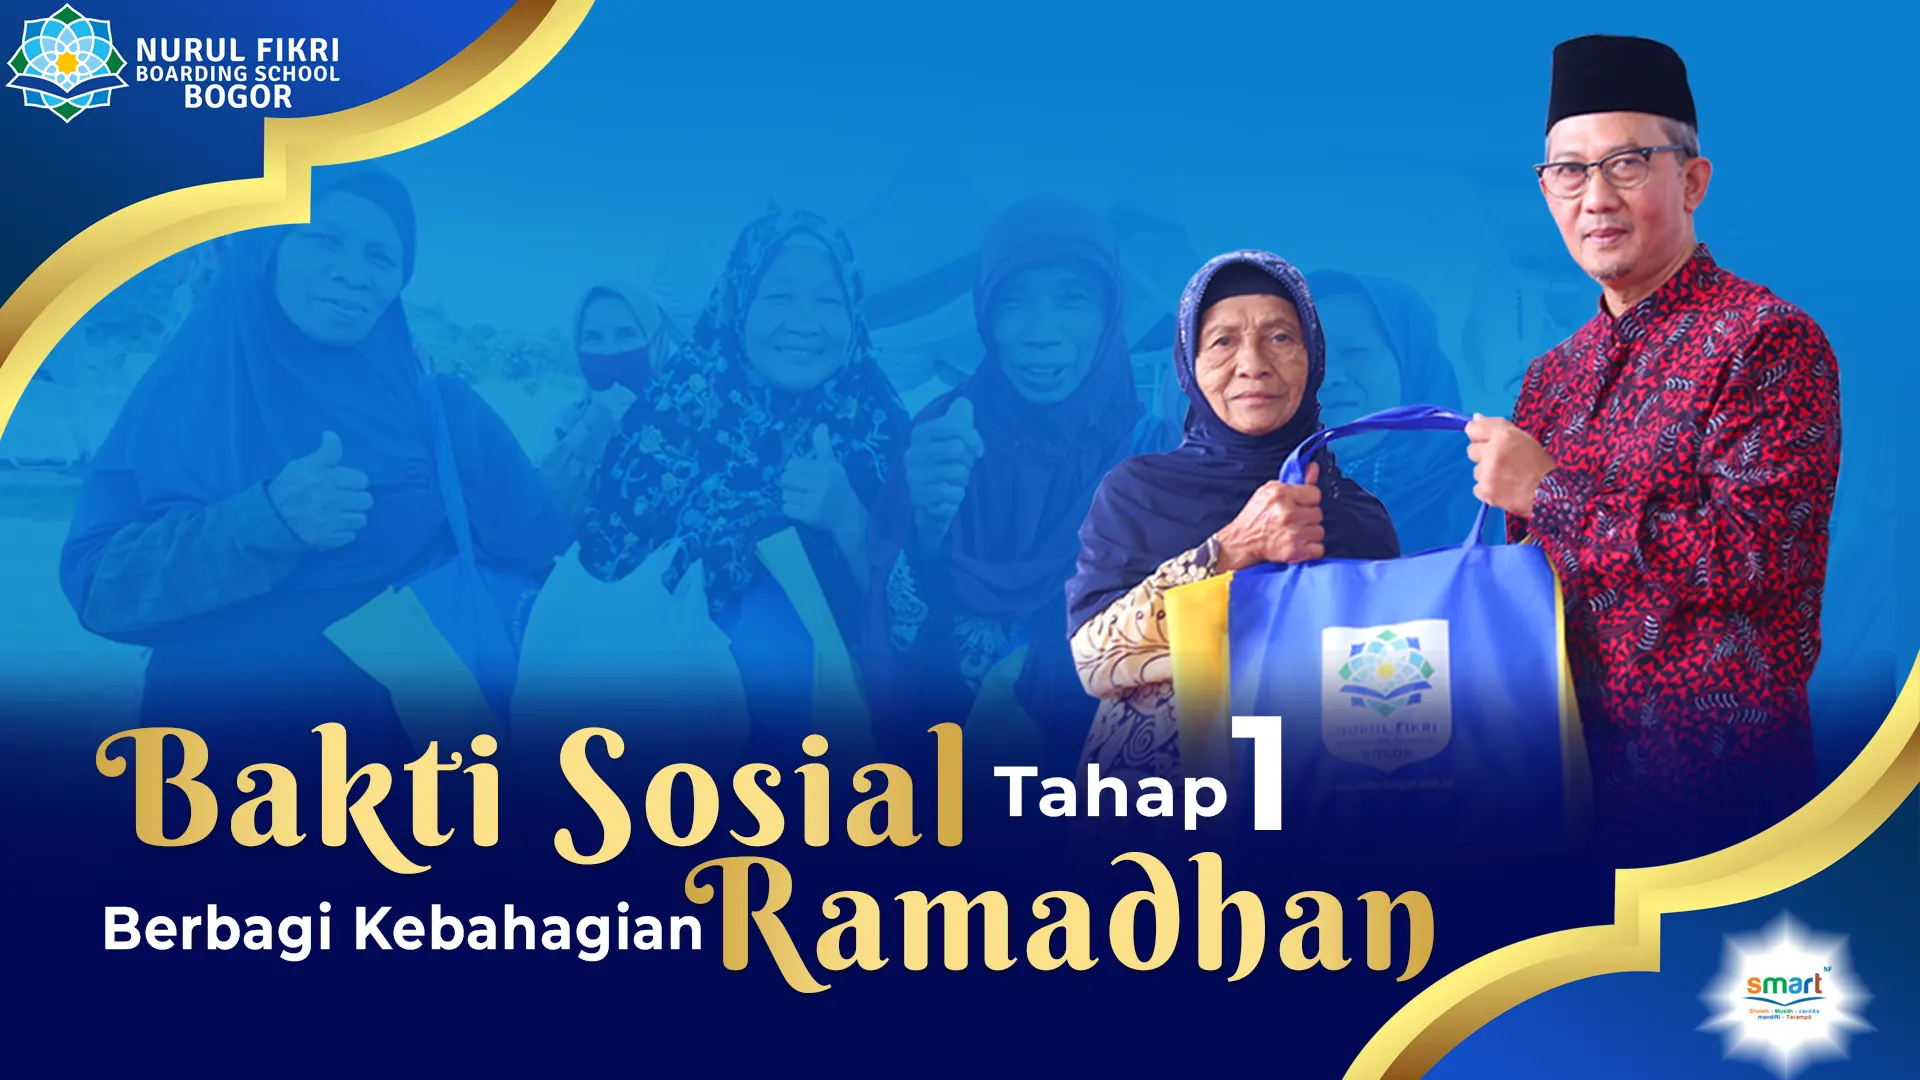 Berbagi Kebahagian Ramadhan NFBS Bogor targetkan 1000 paket sembako gratis untuk masyakrat Duafa 